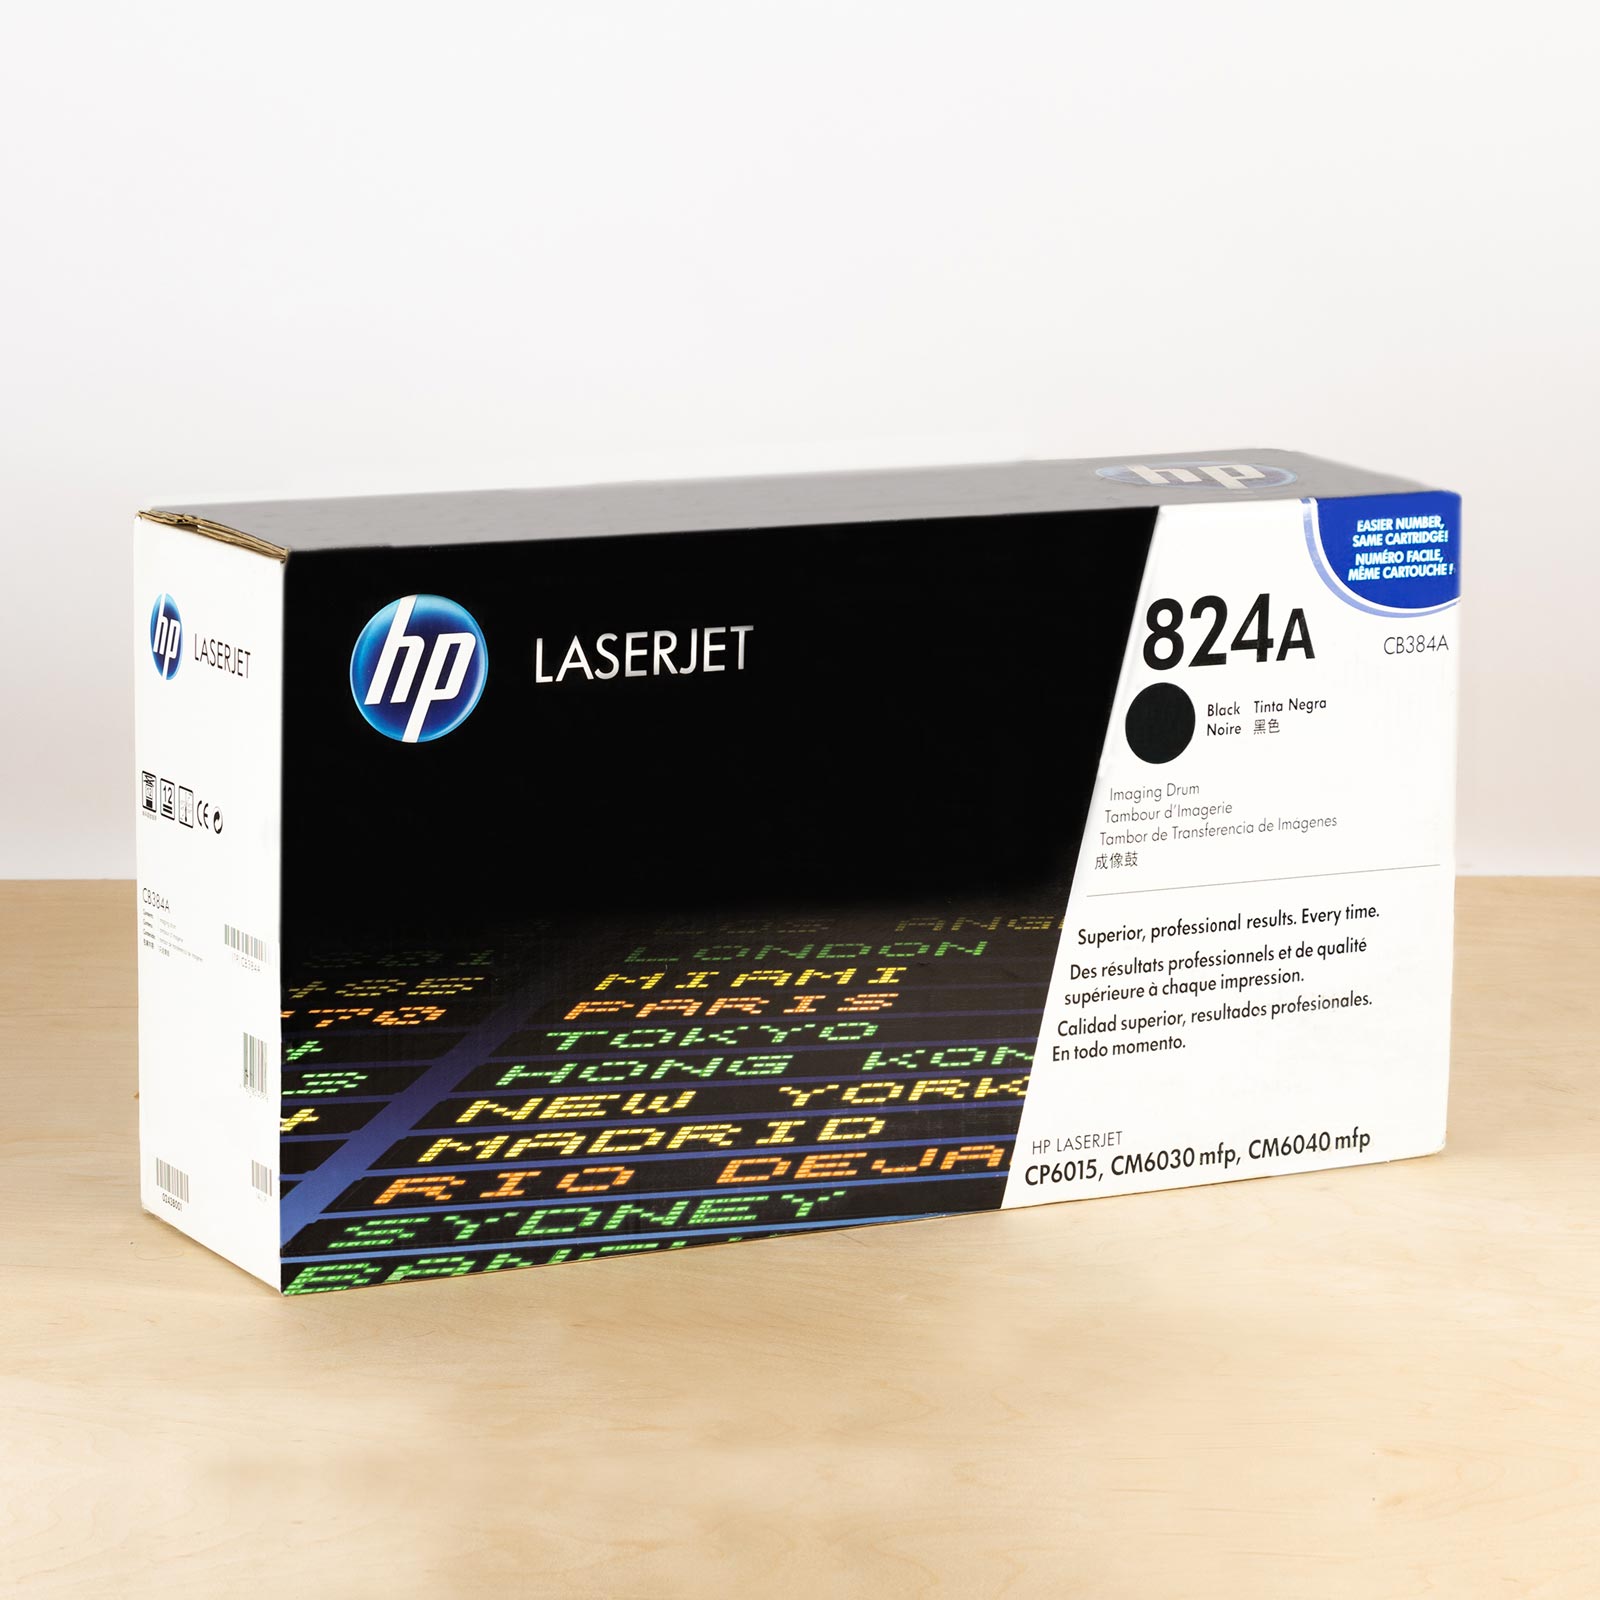 Hp Black-Drum-HP-Color-LaserJet-CP6015-oem